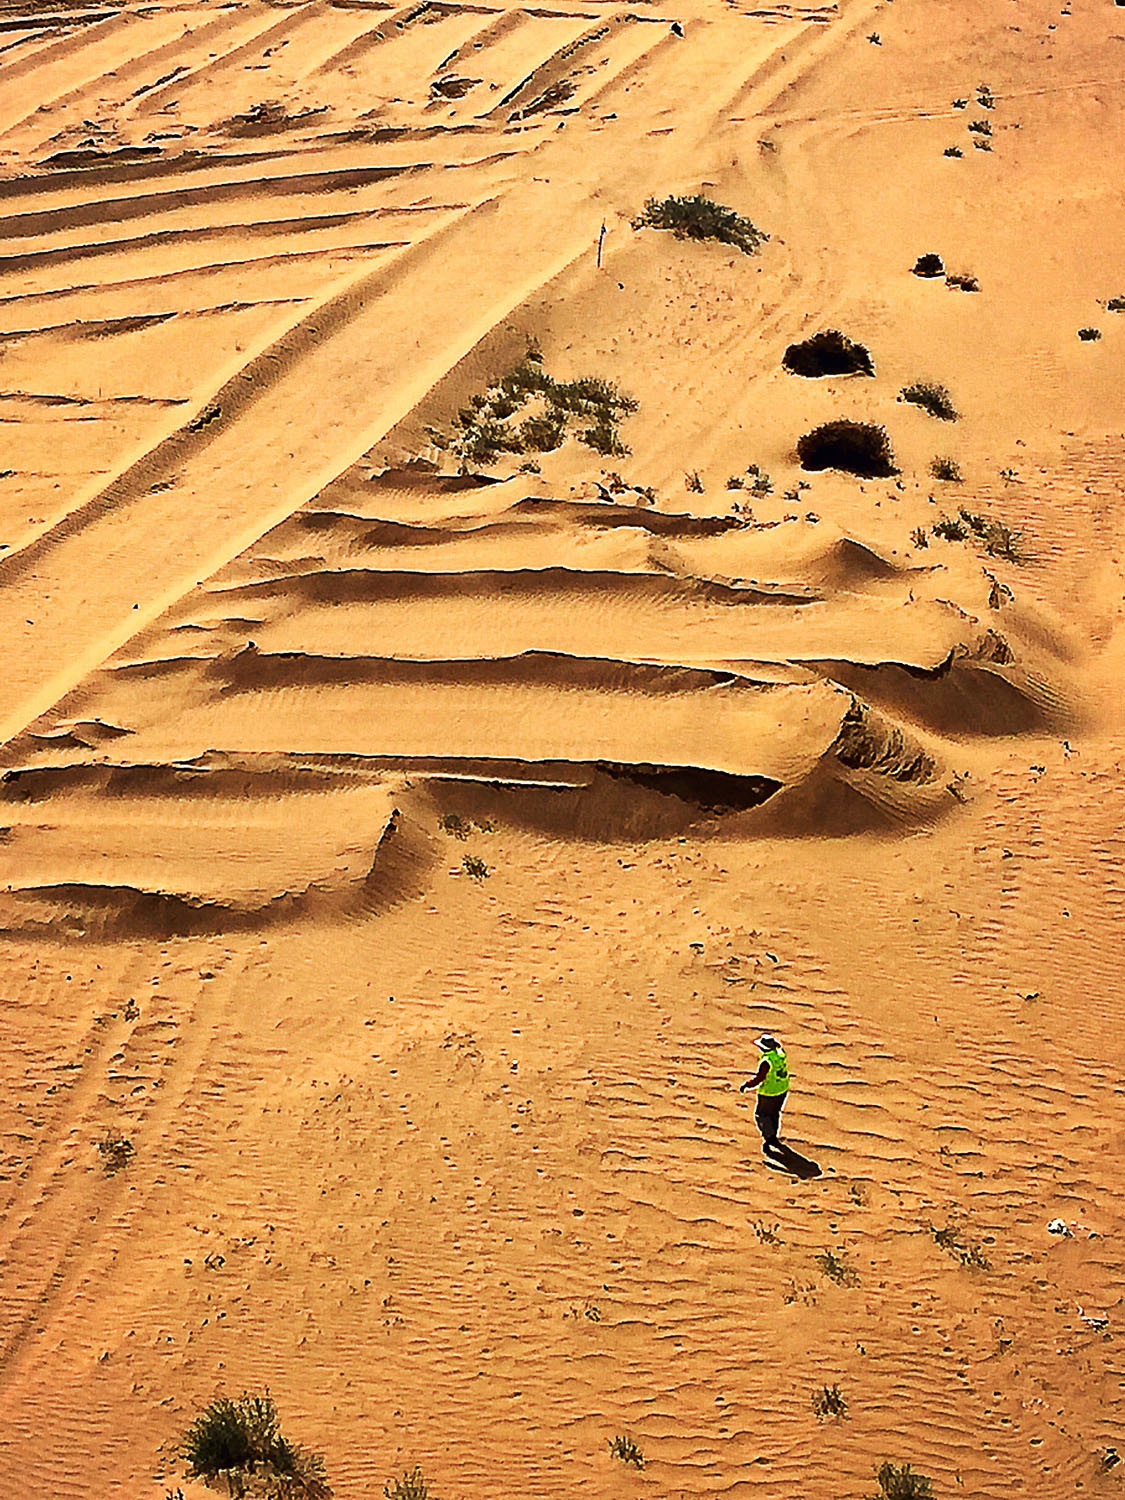 易解放独自行走在沙漠中.jpg